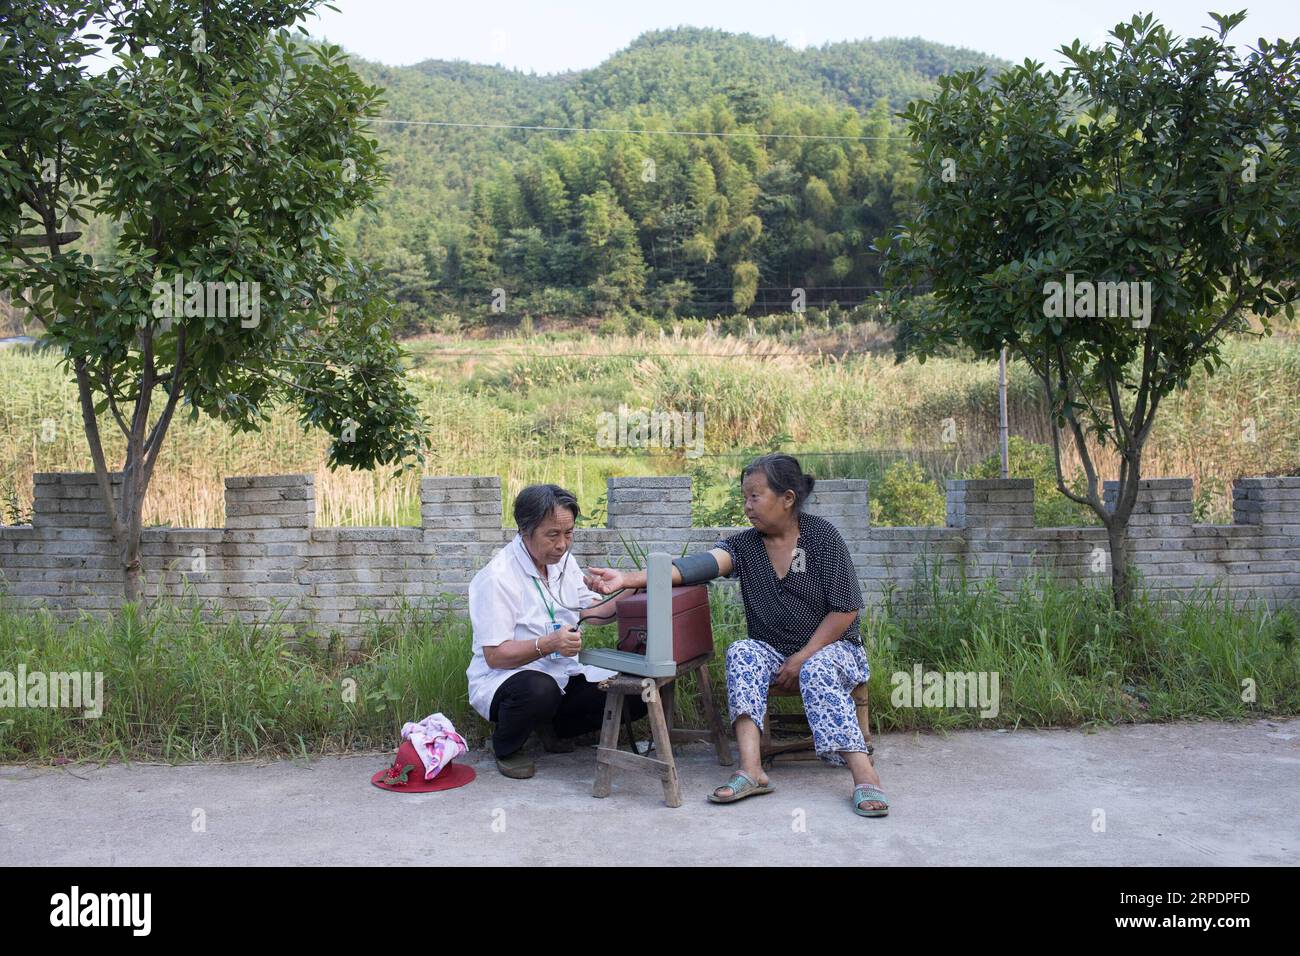 (190810) -- BEIJING, 10 août 2019 -- Gao Yinshui vérifie la tension artérielle d'un villageois dans le village de Lixin de la ville de Meiling dans le district de Wanli de la ville de Nanchang, province de Jiangxi dans l'est de la Chine, 8 août 2019. Presque tous les jours au cours des quatre dernières décennies, Gao Yinshui, médecin de village de 69 ans, marche sur des kilomètres sur des routes de montagne pour voir ses patients dans neuf villages différents. Fin 1970, la mère de Gao a eu une urgence et a eu la chance d être sauvée par un médecin rural local. Pour cette raison, Gao Yinshui a abandonné la possibilité d'être enseignant et a choisi de devenir médecin rural. Cependant, elle n'a pas de FO médical Banque D'Images